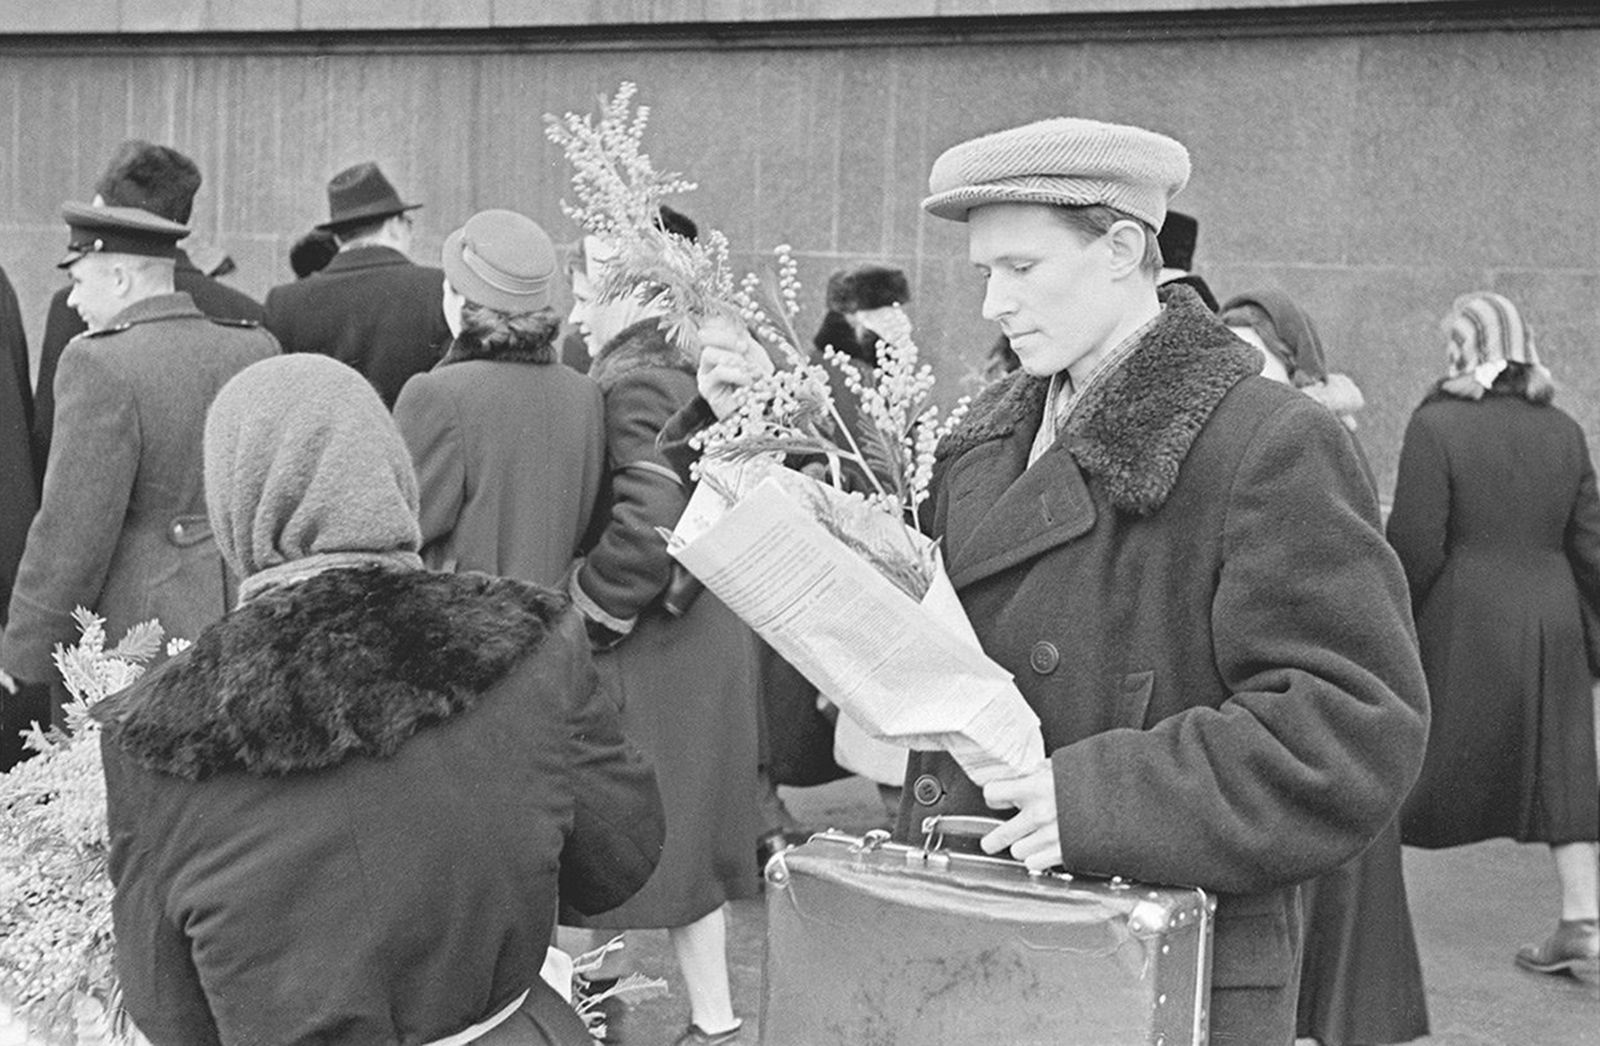 Фоторепортаж «Накануне 8 Марта». «Дарите женщинам цветы!». Фото Ю. Королева. 1950-е годы. Главархив Москвы